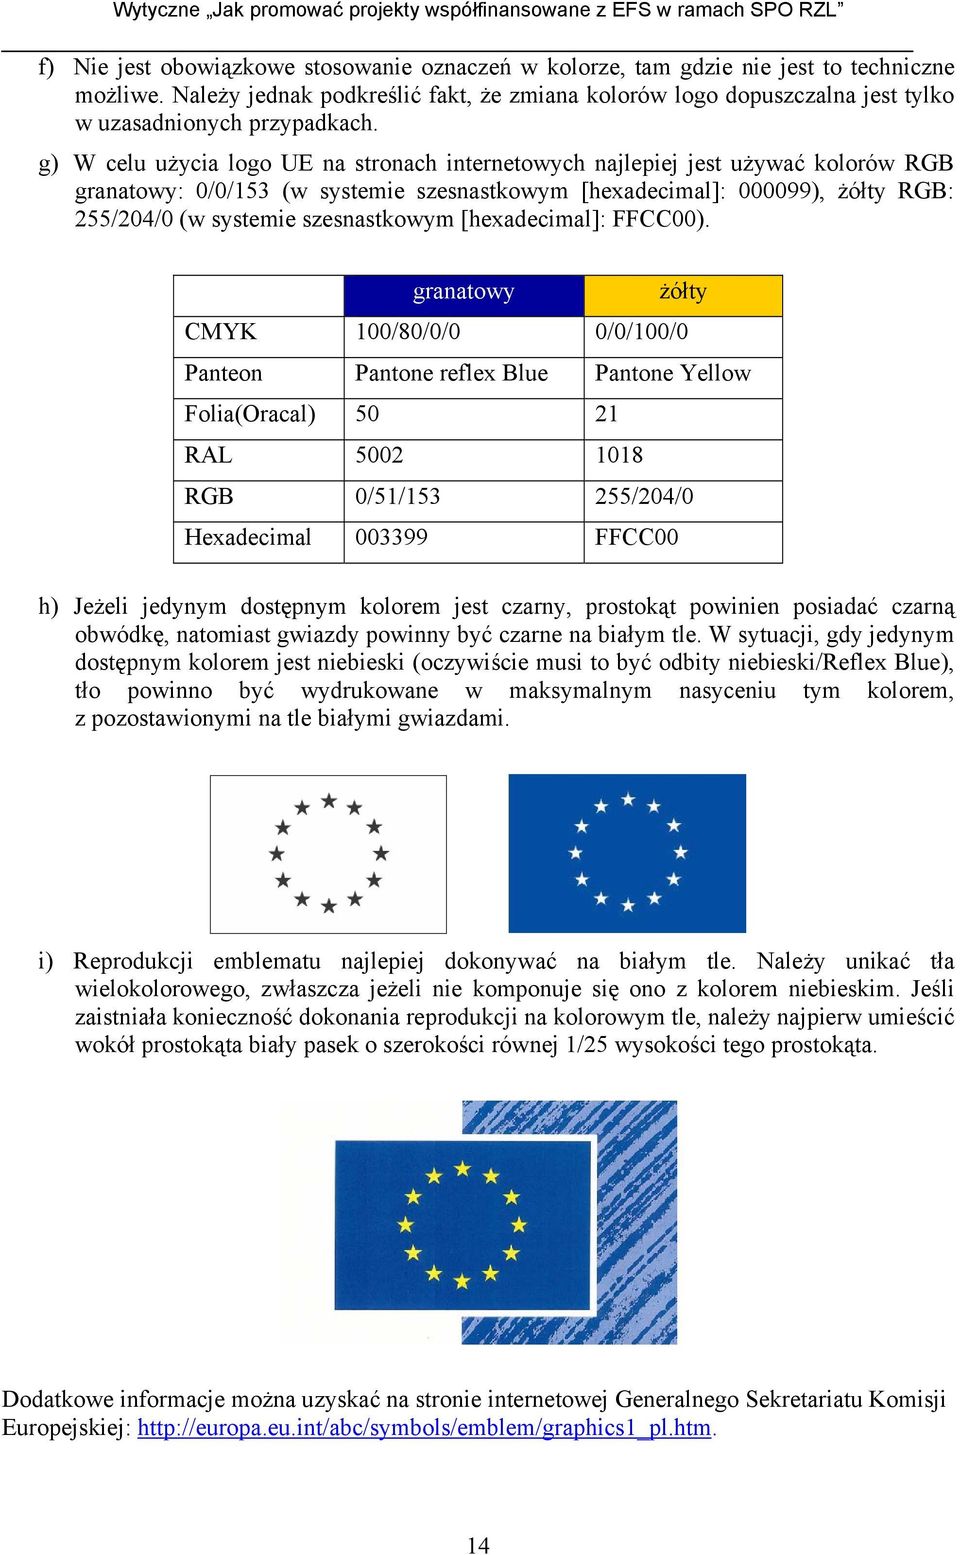 g) W celu użycia logo UE na stronach internetowych najlepiej jest używać kolorów RGB granatowy: 0/0/153 (w systemie szesnastkowym [hexadecimal]: 000099), żółty RGB: 255/204/0 (w systemie